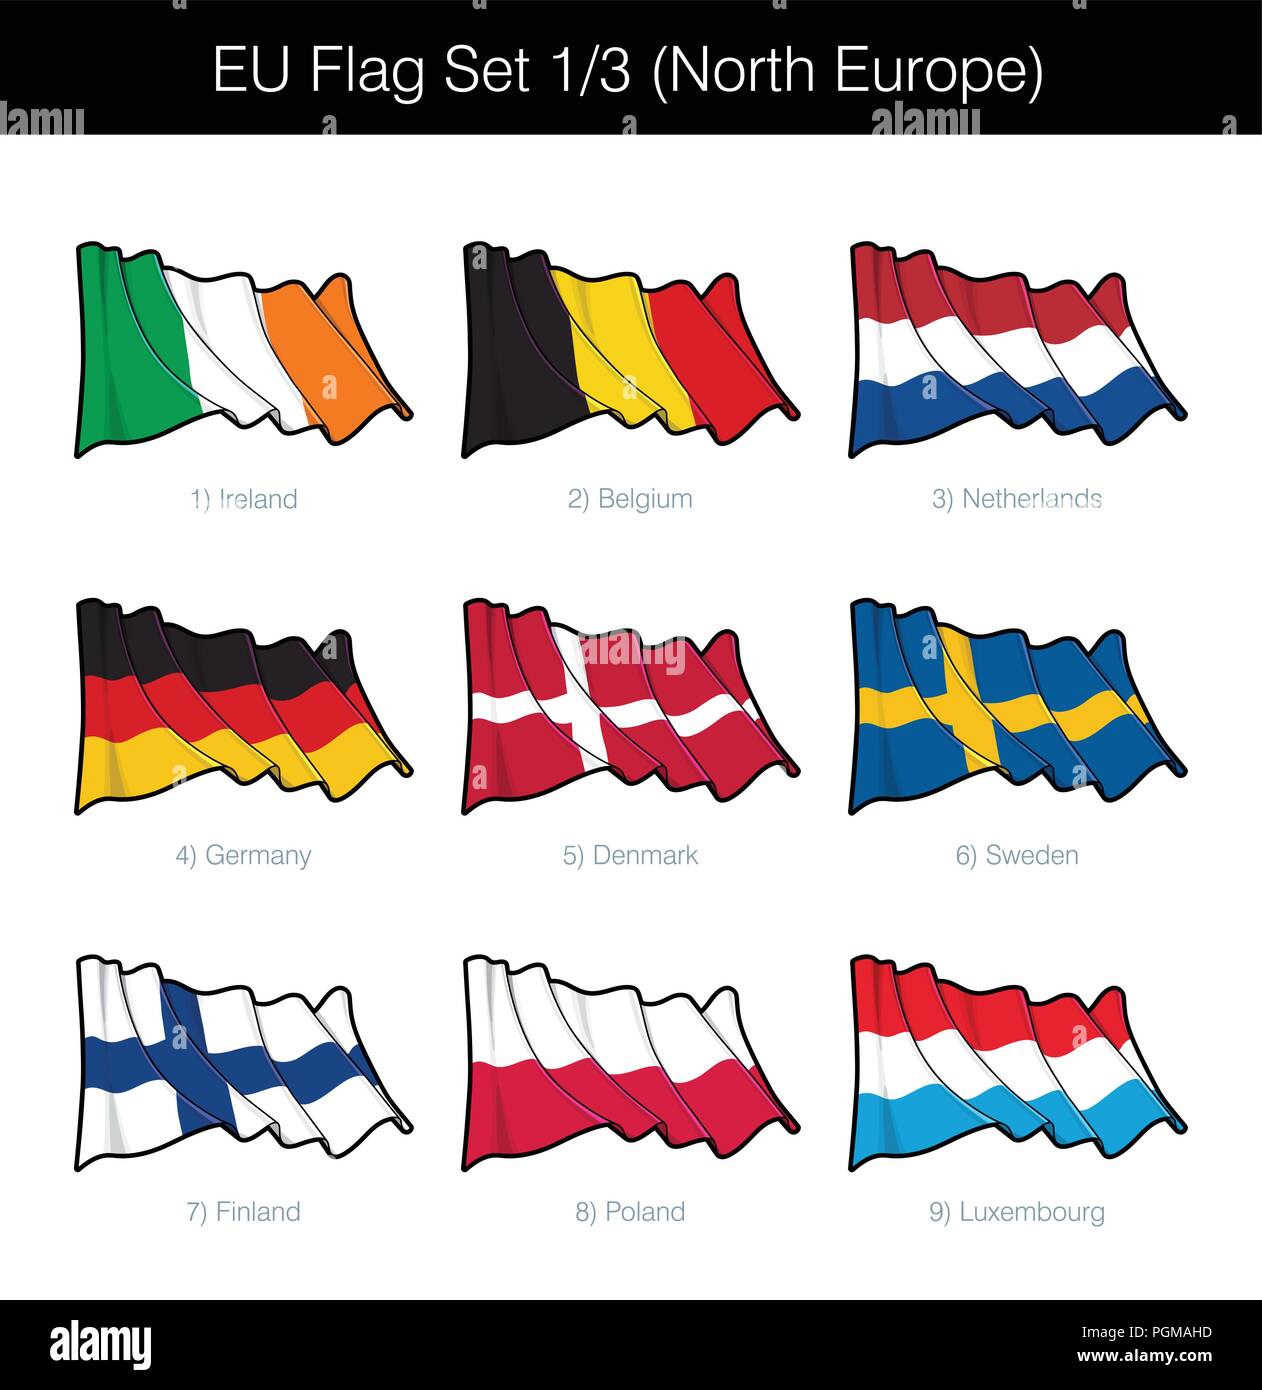 Unione europea sventola bandiera insieme di Nord degli Stati europei. Il set include le bandiere di Irlanda, Belgio, Germania, Paesi Bassi, Danimarca, Svezia, Finlandia, Polonia Illustrazione Vettoriale